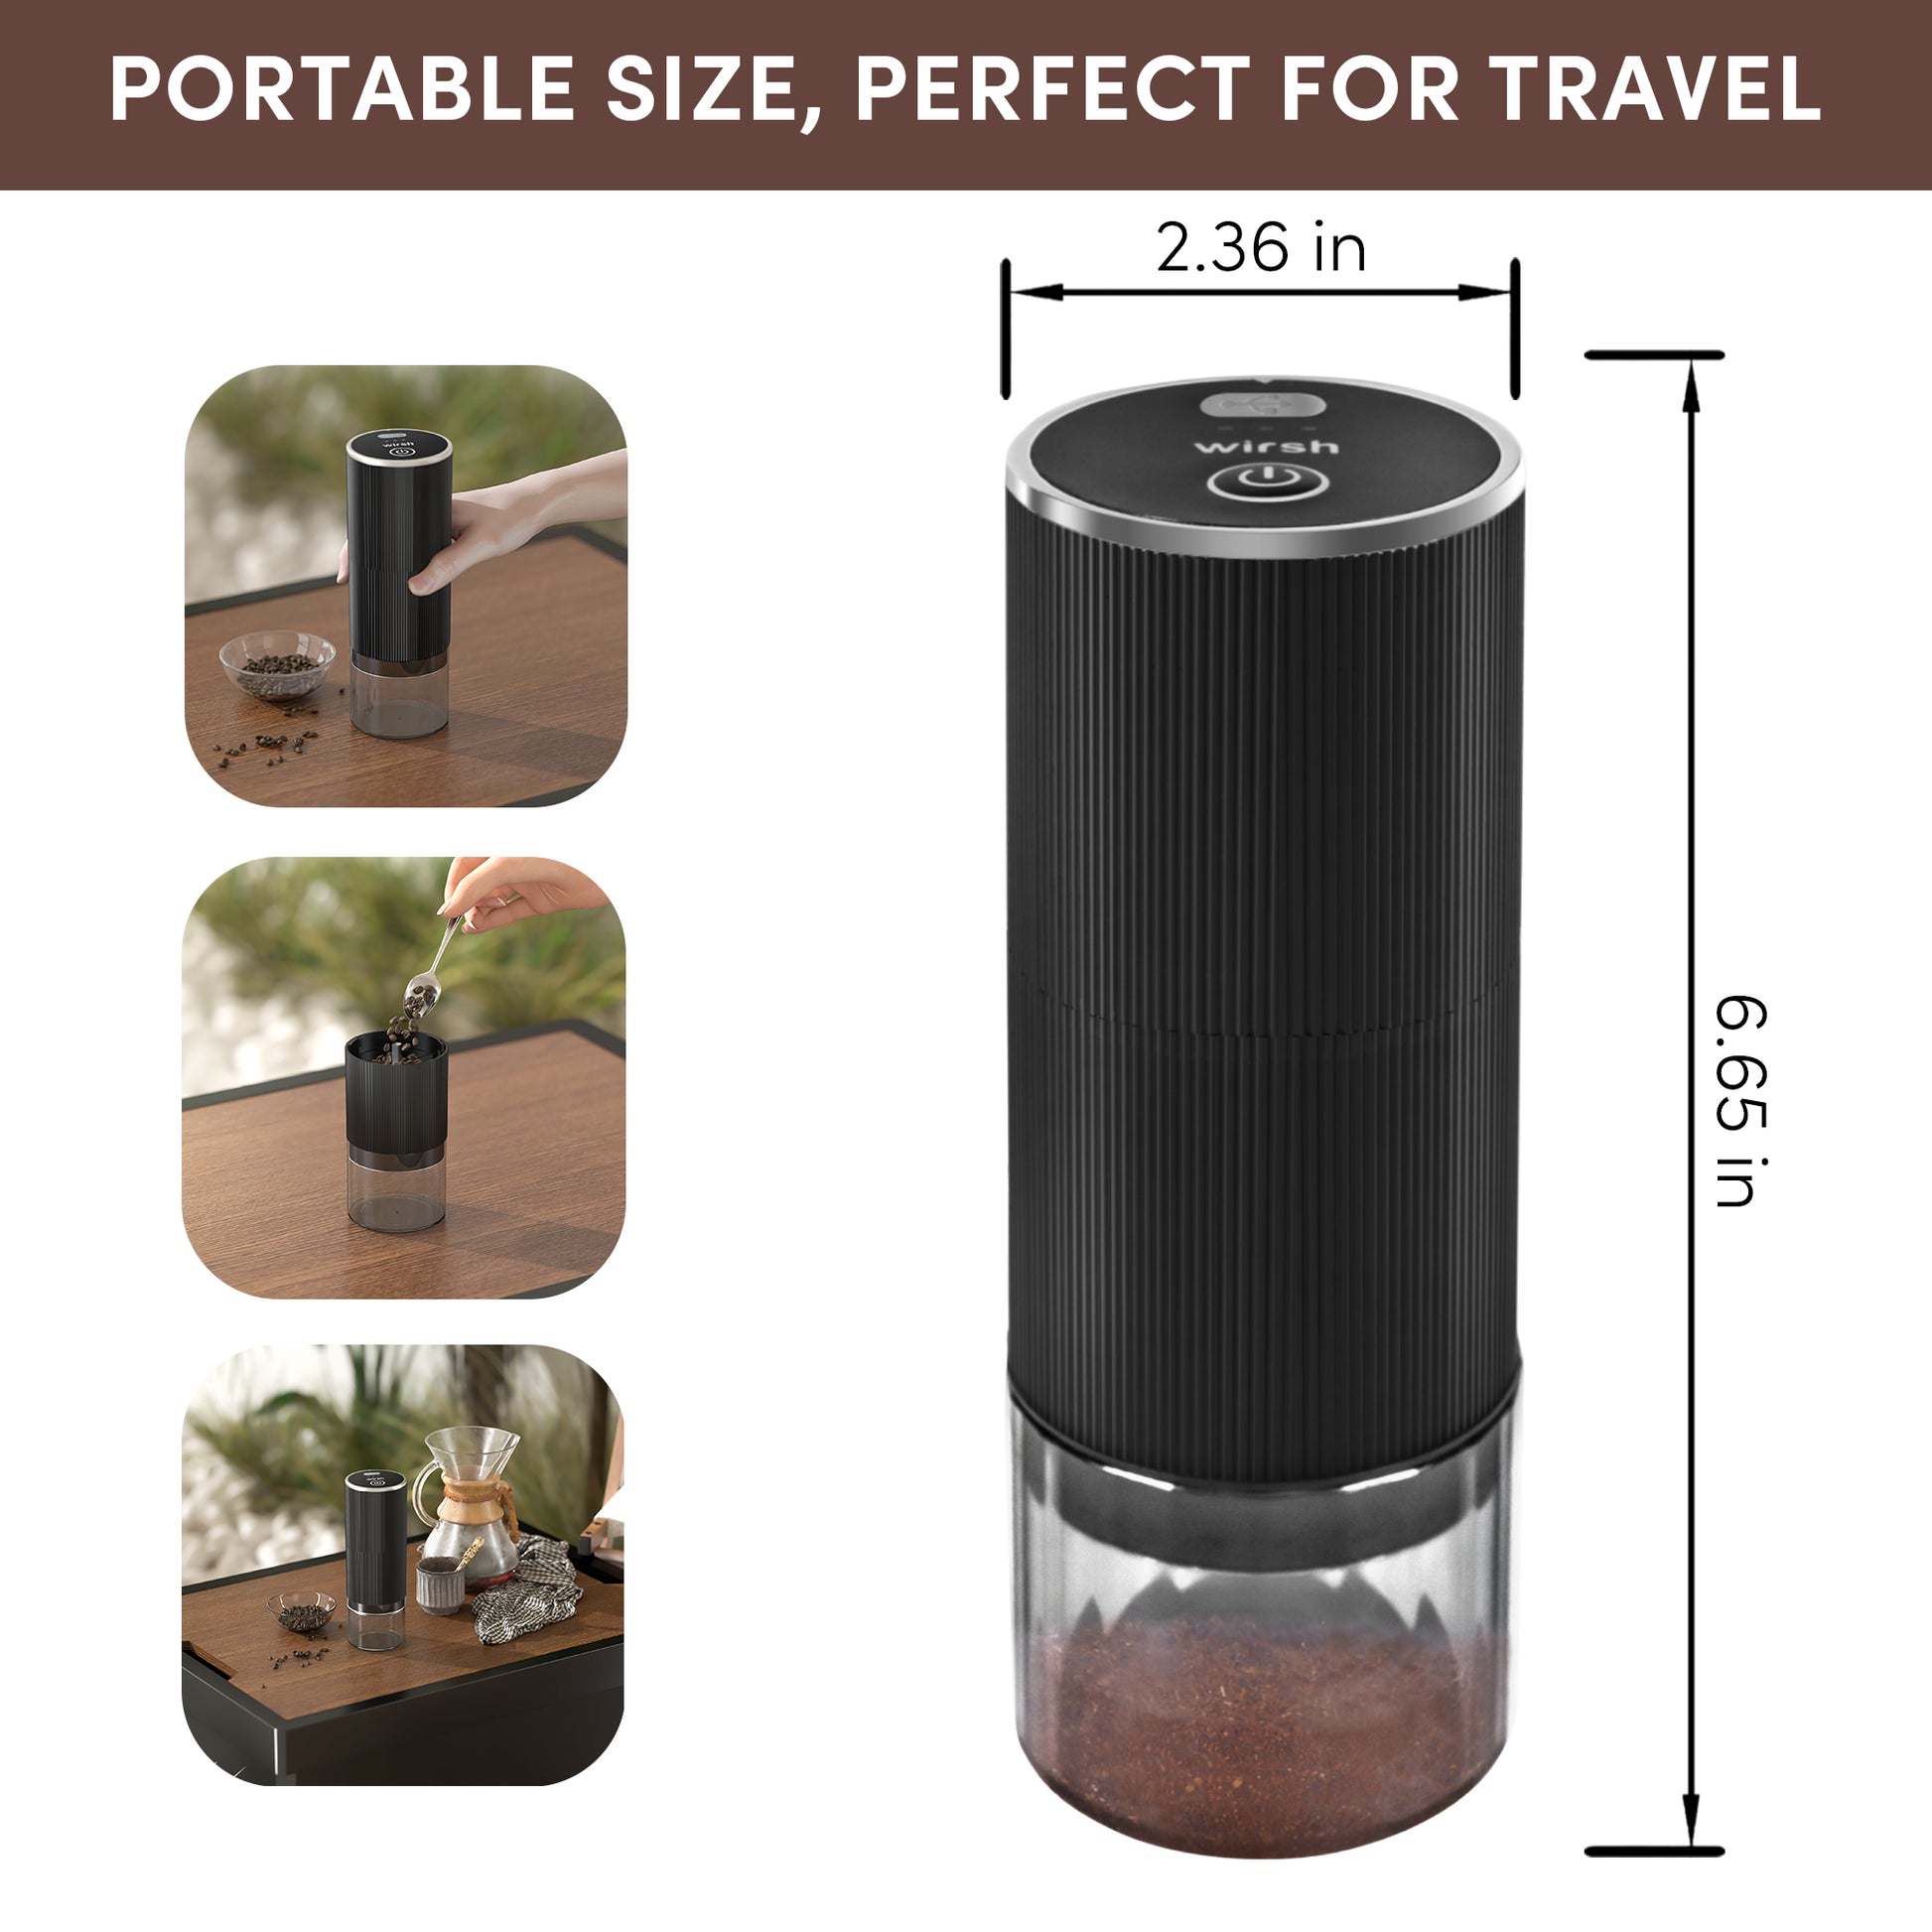 <img src="coffee grinder.jpg" alt="wirsh poratable coffee grinder"/>